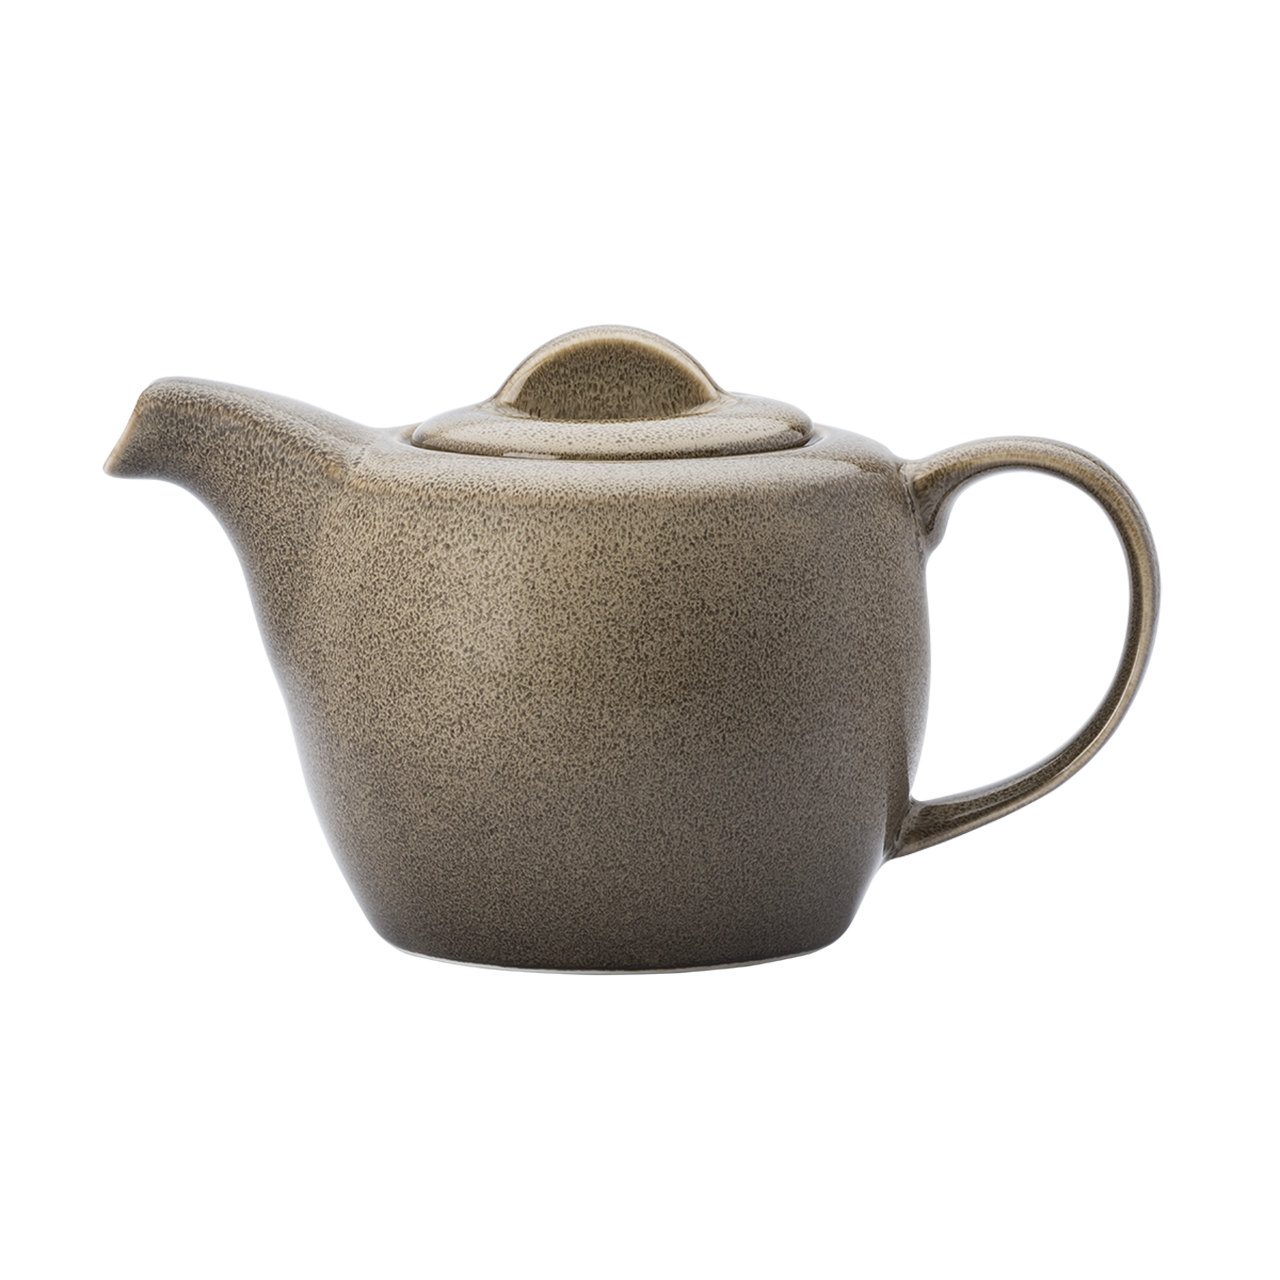 Rustic Tea Pot - Luzerne